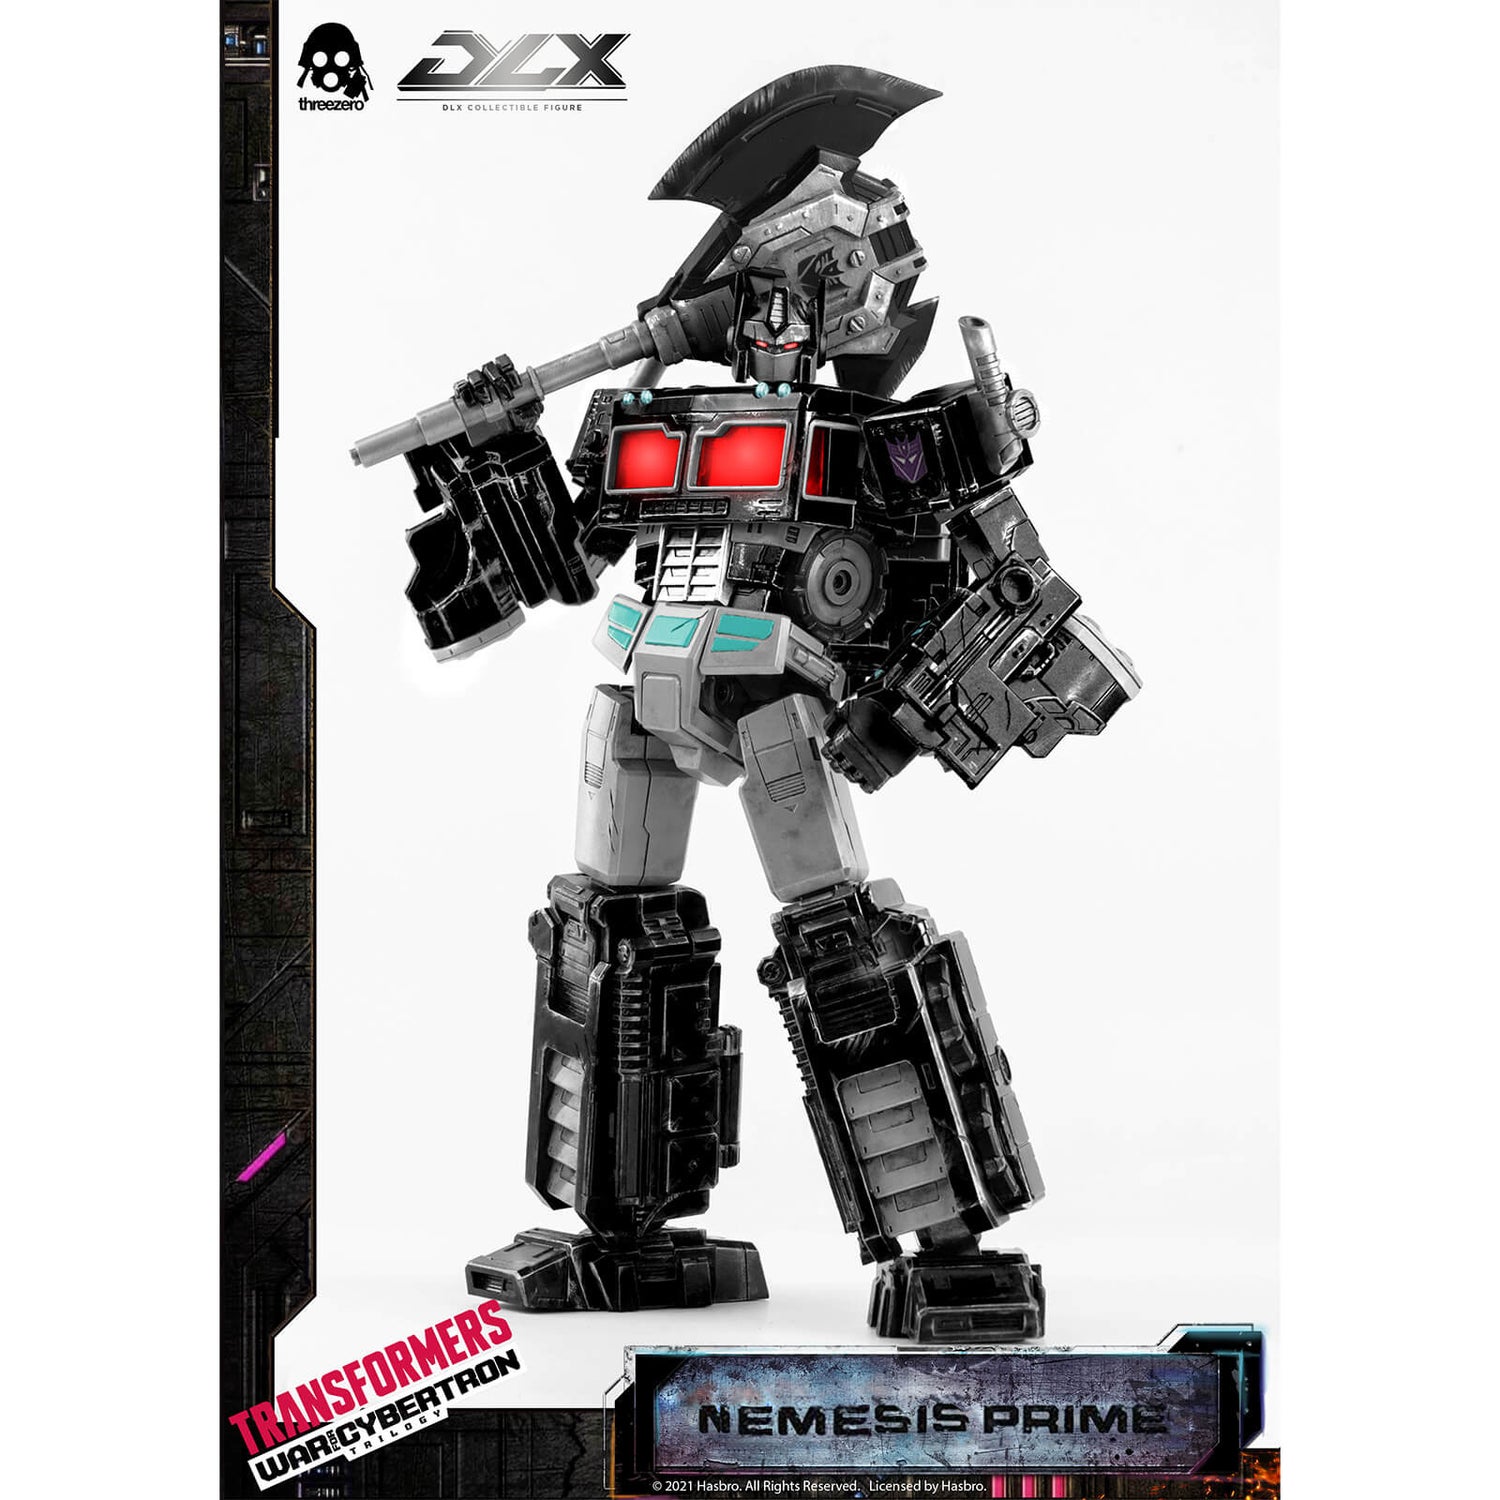 ThreeZero Transformers: Krieg für Cybertron DLX Sammelfigur - Nemesis Prime